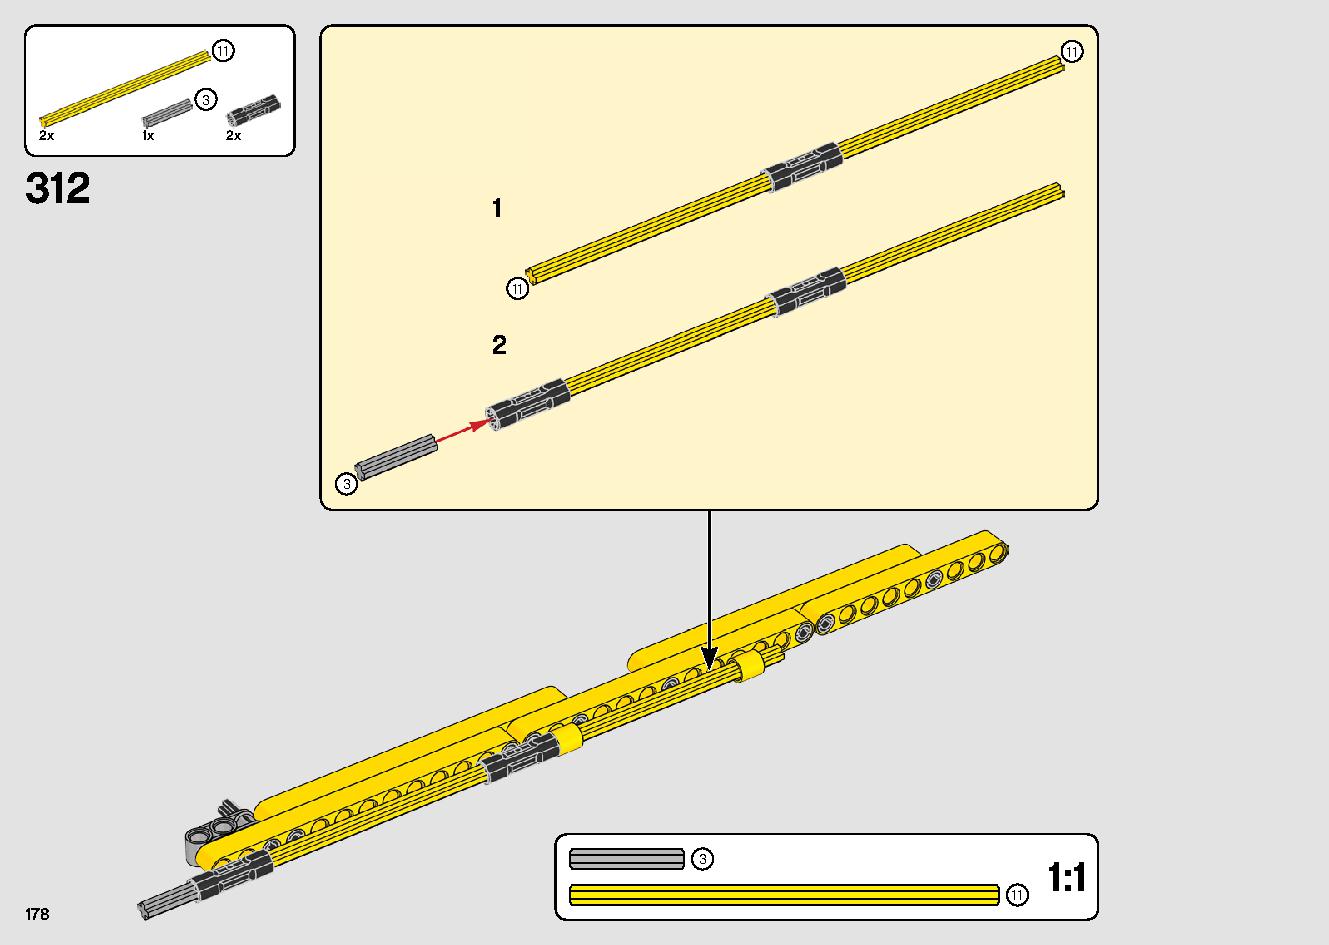 移動式クレーン車 42108 レゴの商品情報 レゴの説明書・組立方法 178 page